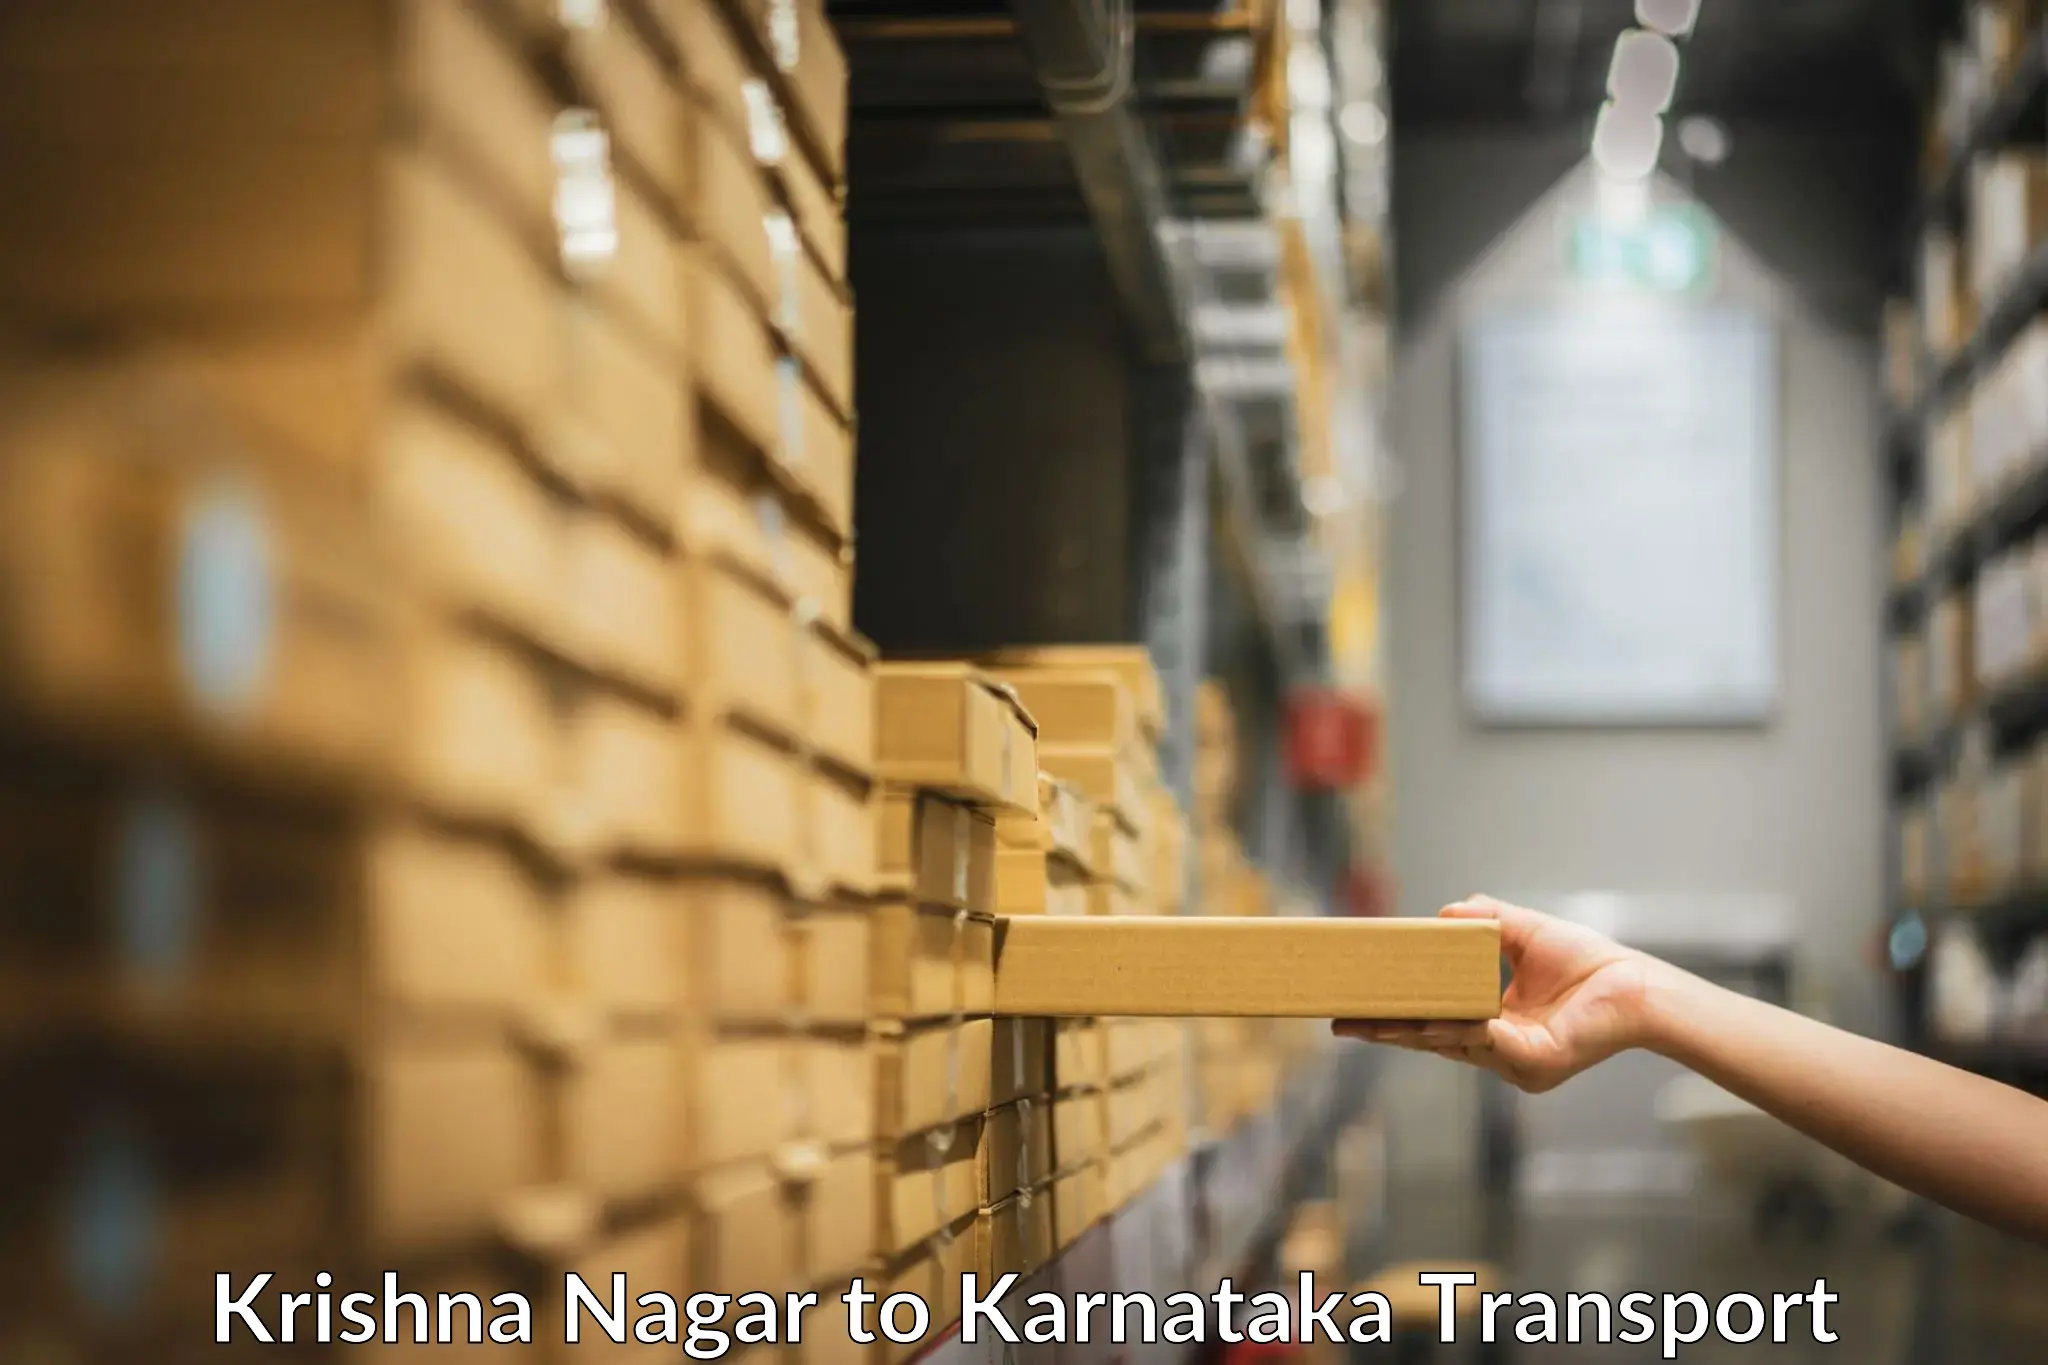 Truck transport companies in India Krishna Nagar to Mundgod